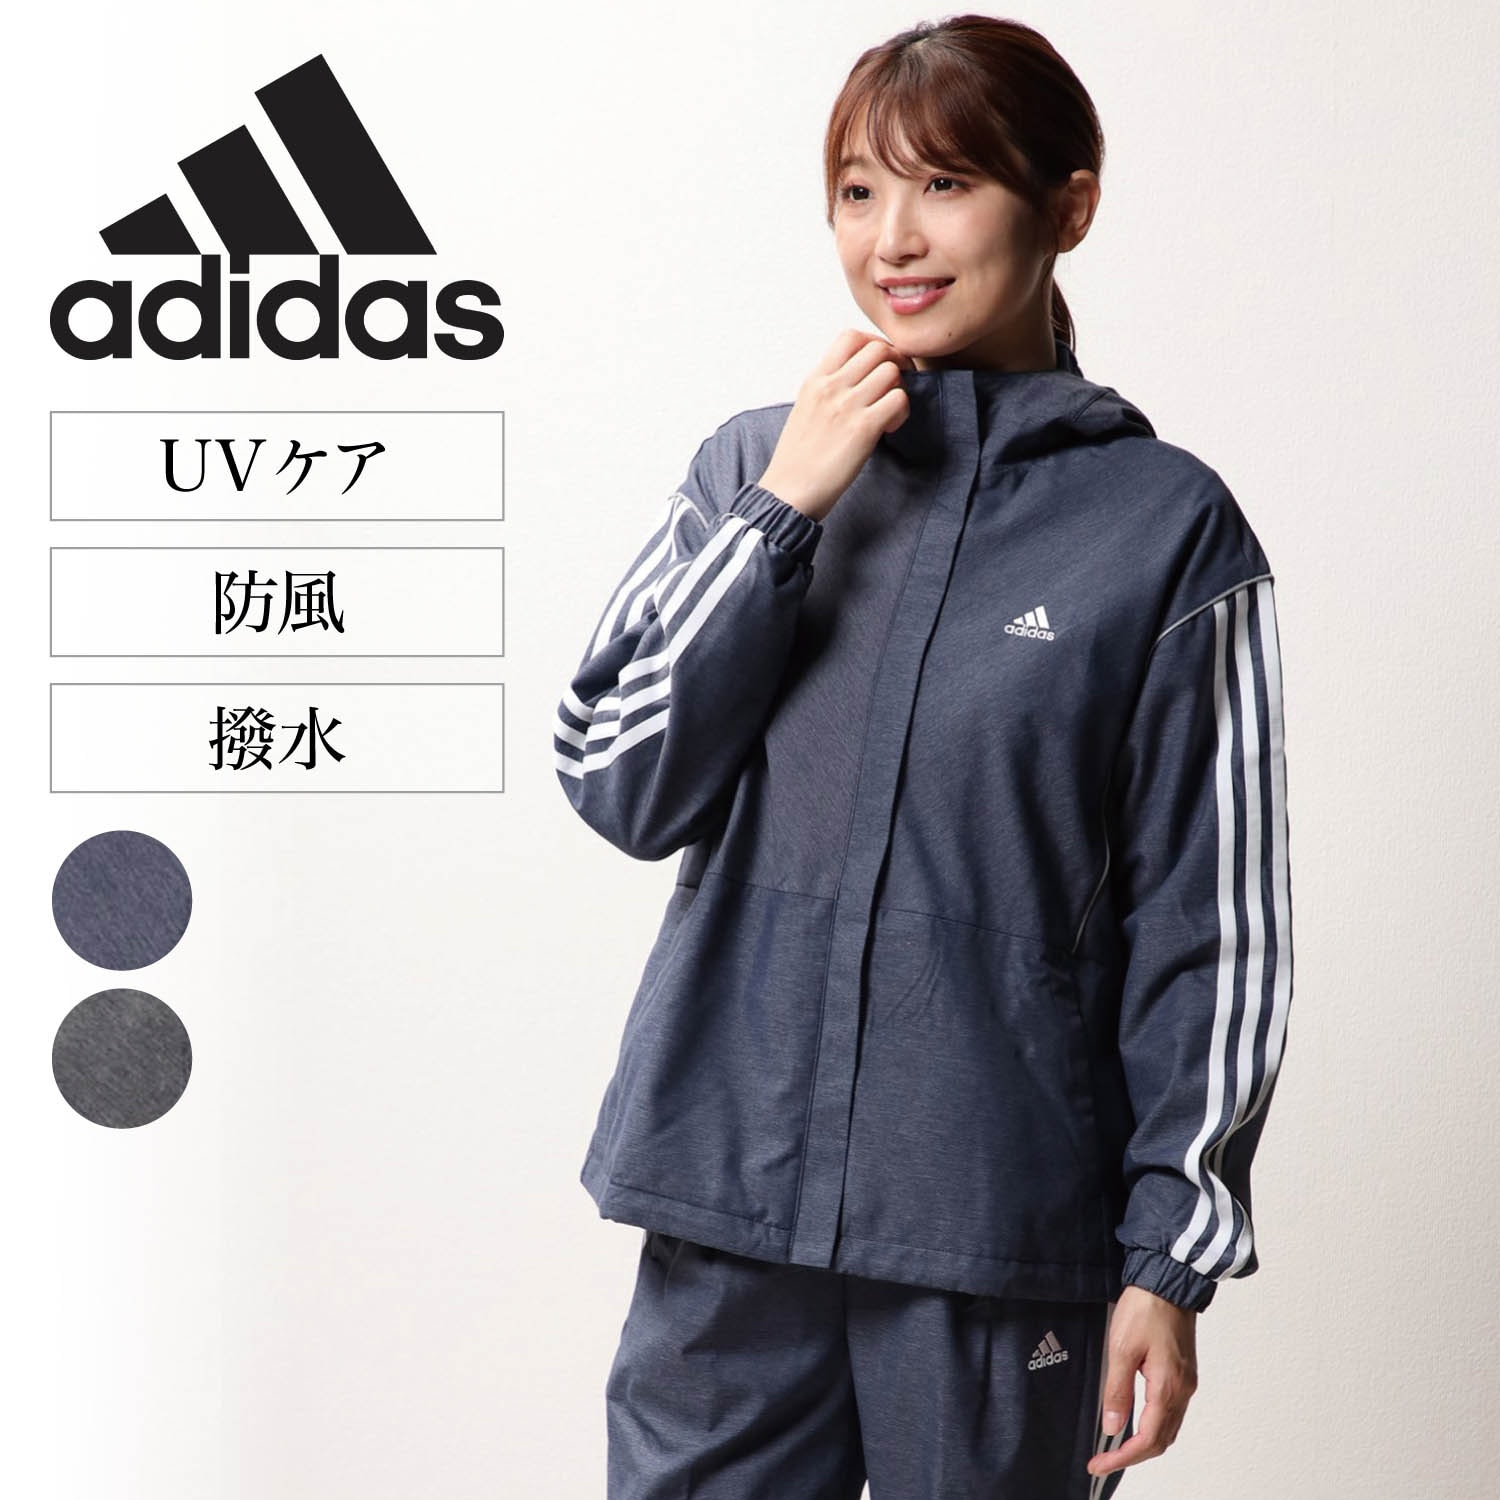 【アディダス/adidas】W247 ウーブンジャケット